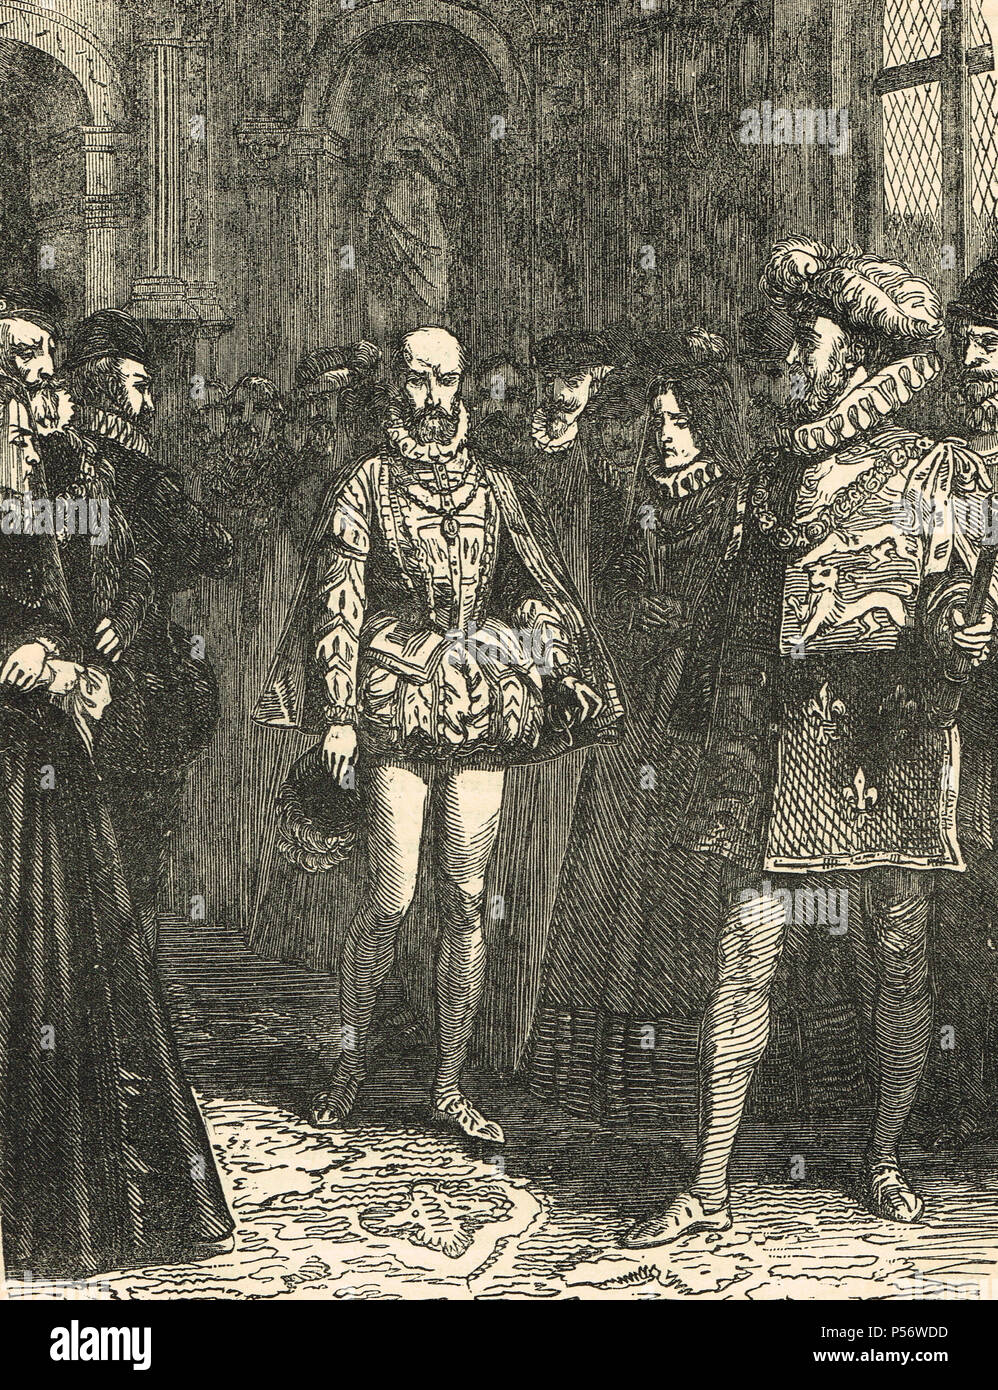 L'ambassadeur de France, Michel de Castelnau, Sieur de la Mauvissiere, dans la cour de la Reine Elizabeth I d'Angleterre, envoyé par le roi Charles X, à la suite du massacre de la Saint-Barthélemy, 1572, pour apaiser l'excitation créée Banque D'Images